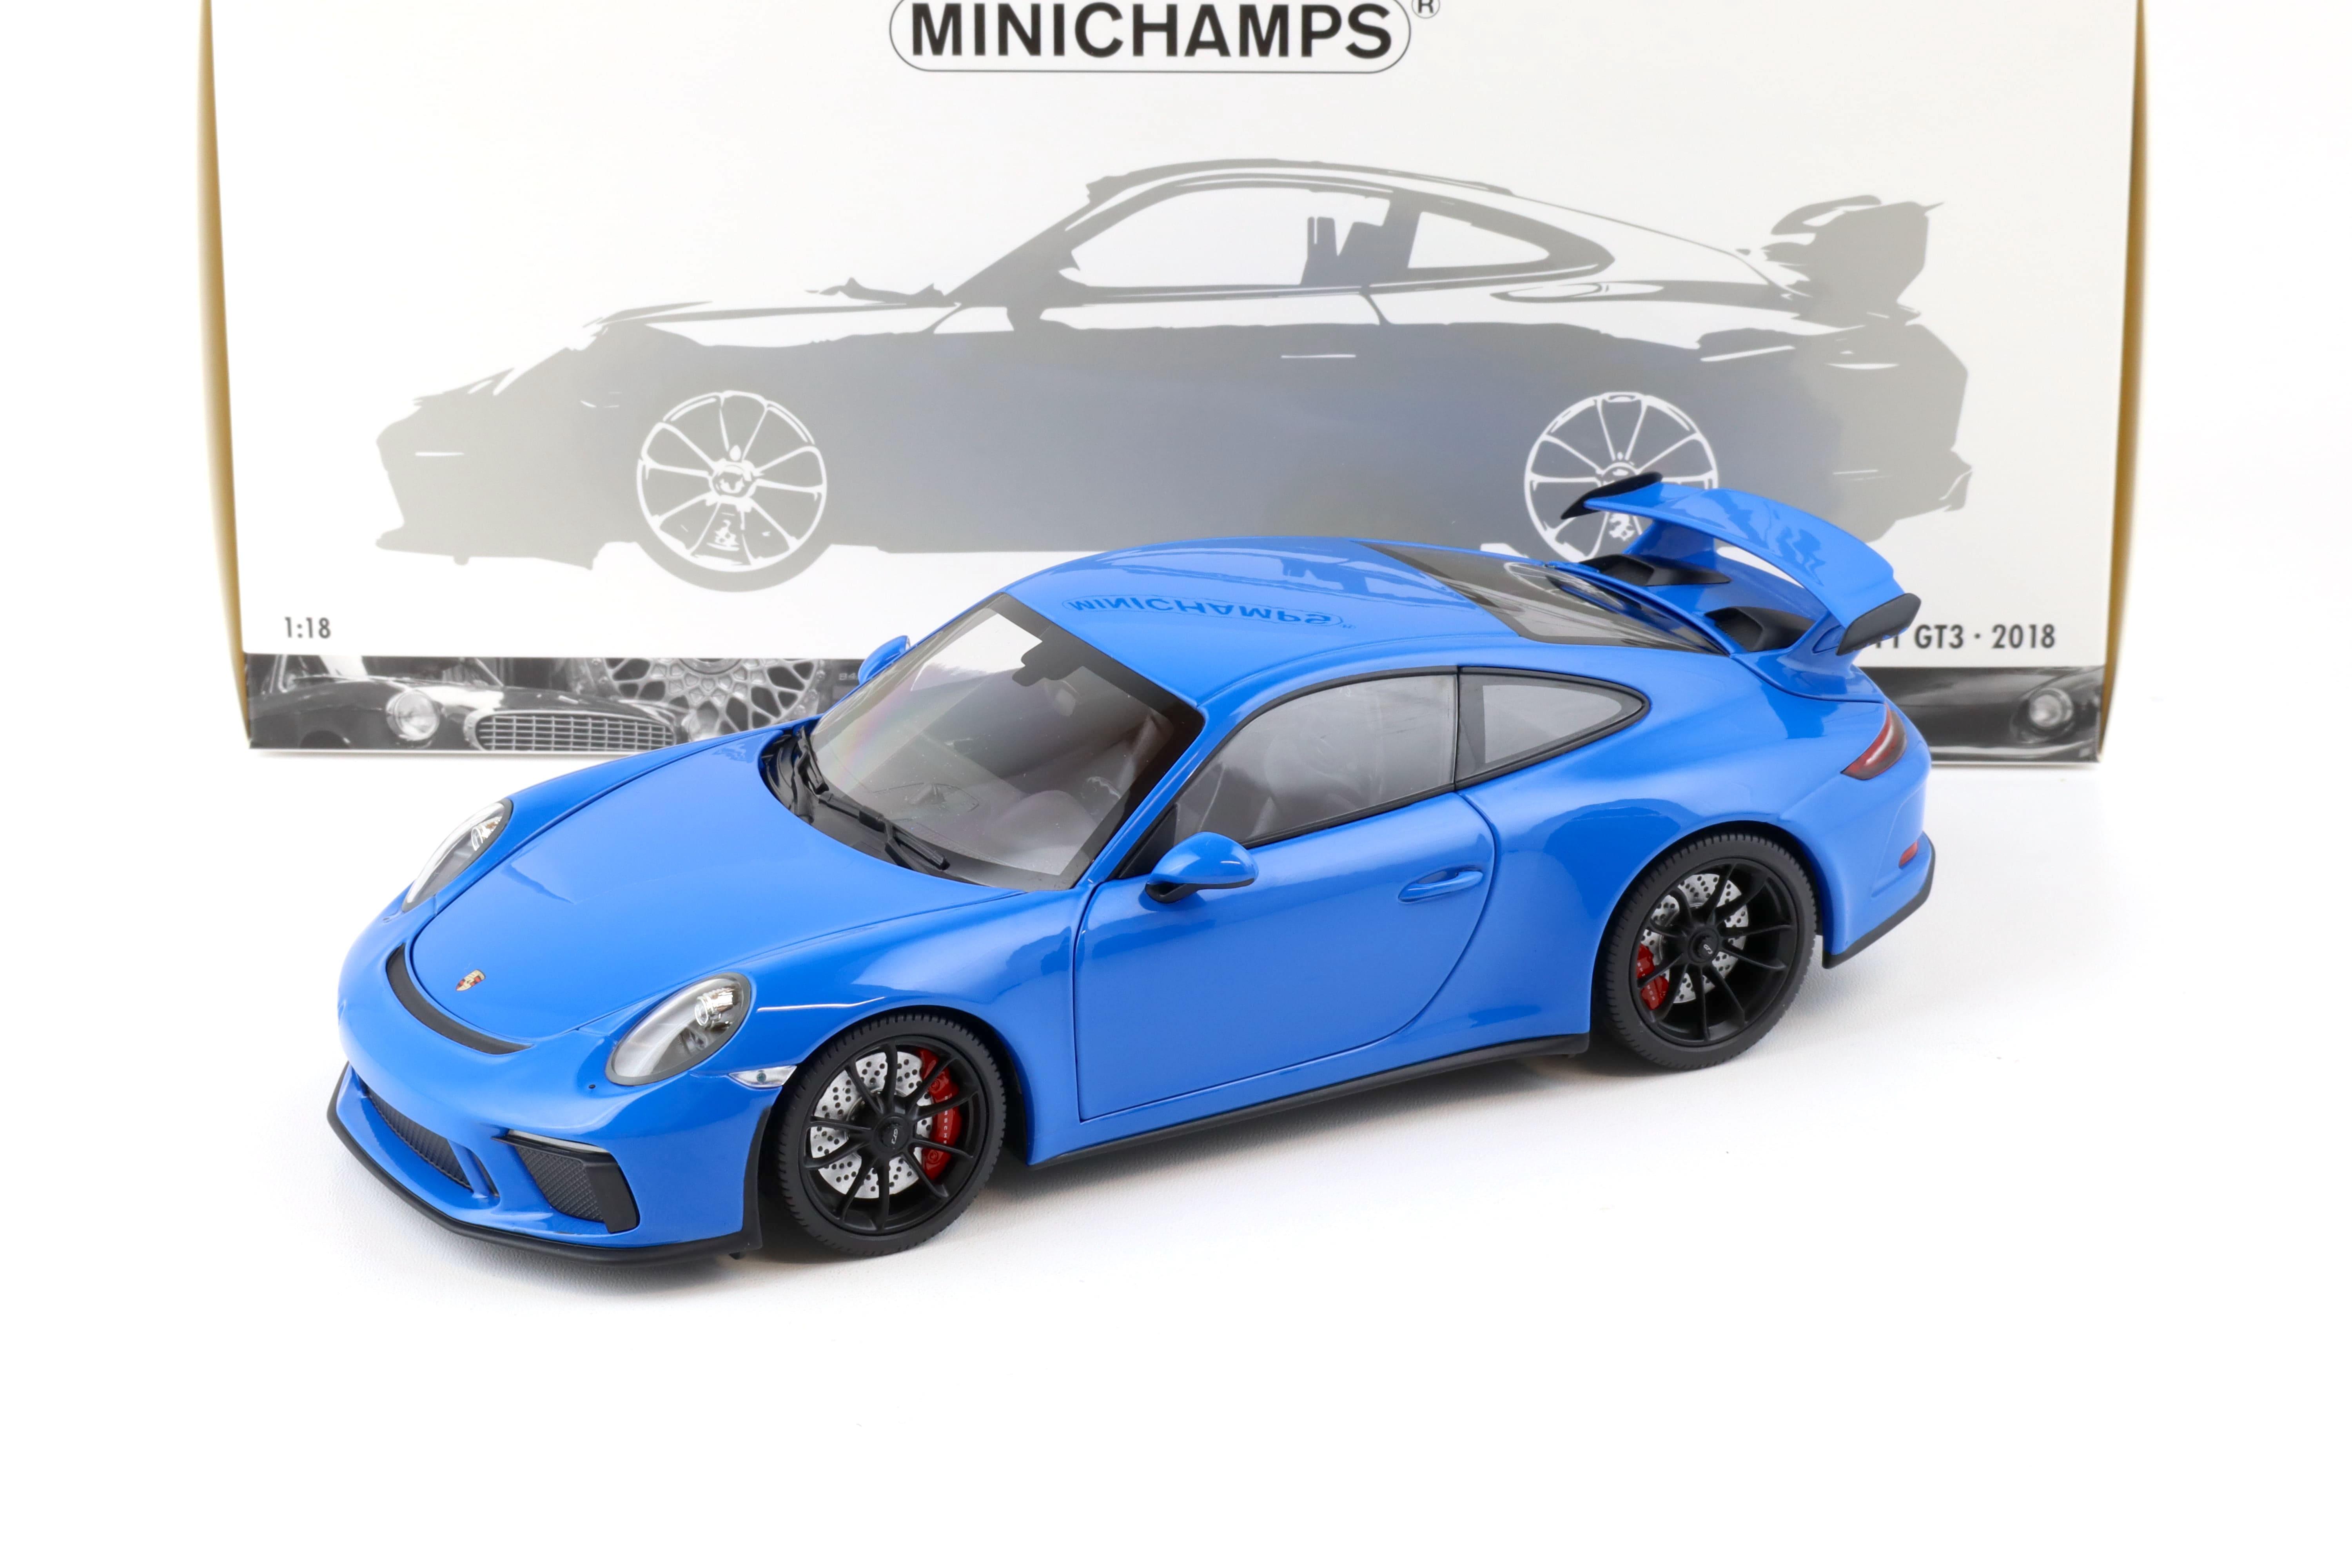 1:18 Minichamps Porsche 911 (991) GT3 Coupe 2018 blue/ black wheels